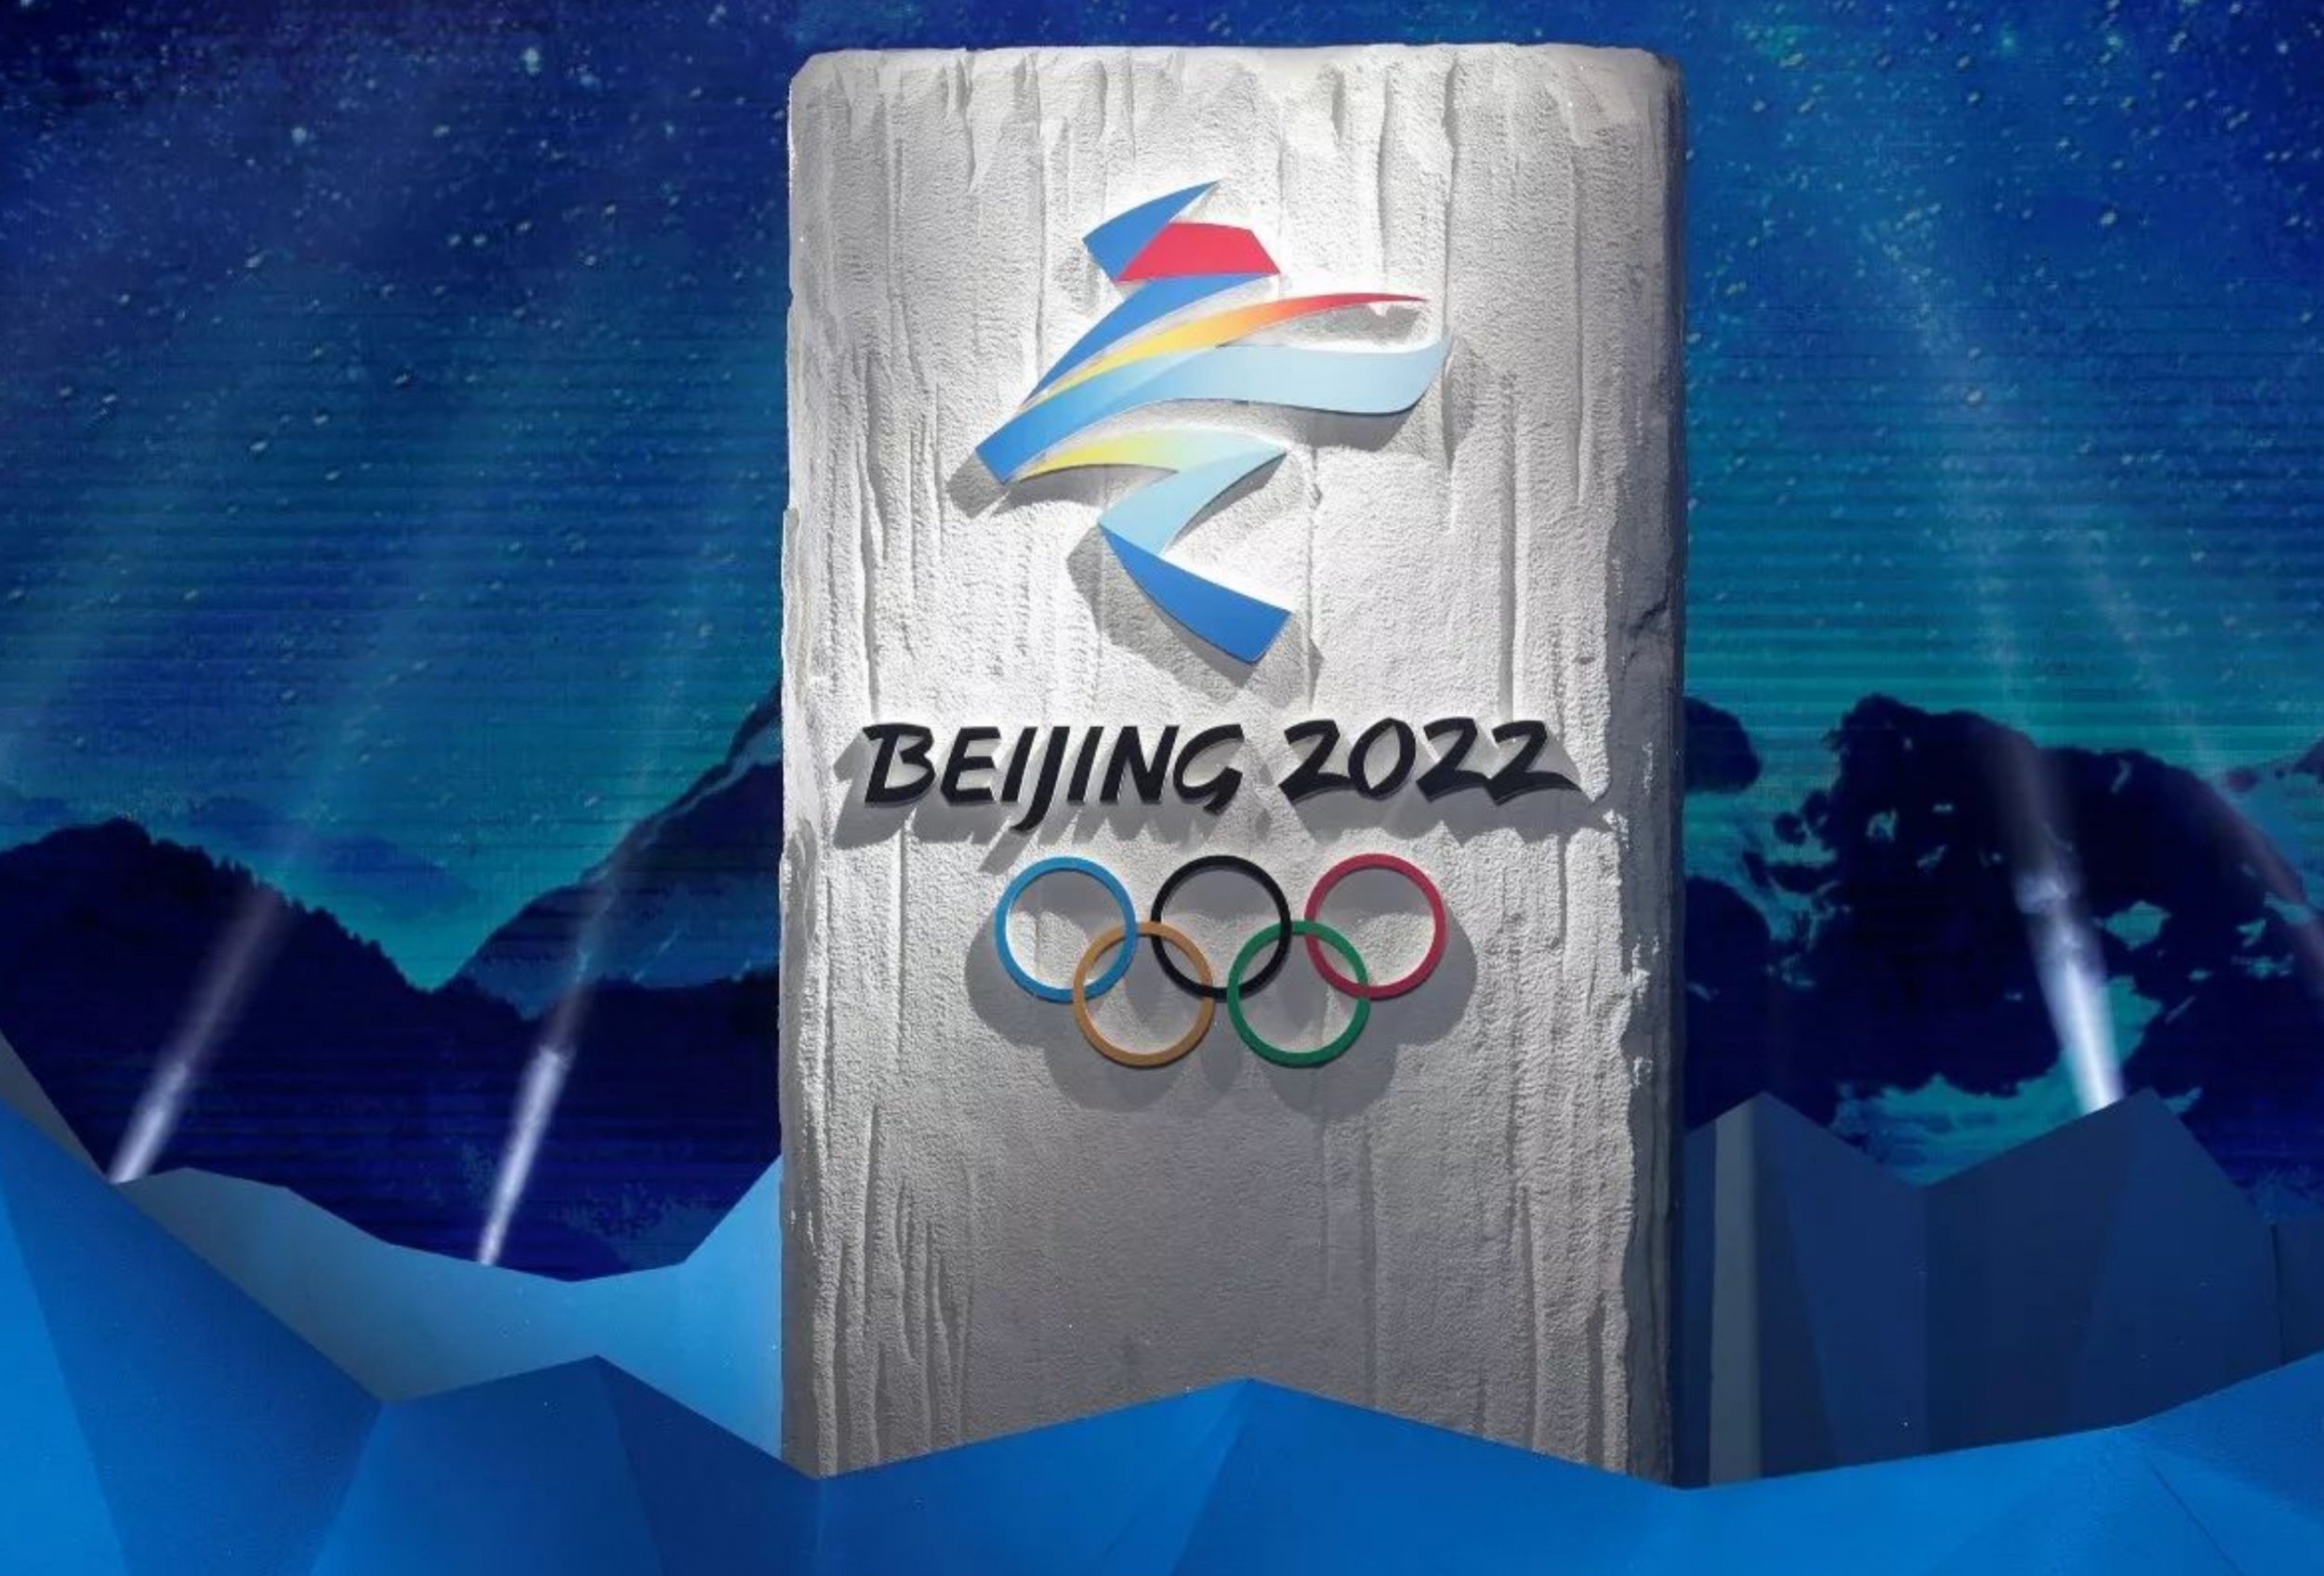 2022年冬奥会在北京啦熊猫形象与富有超能量的冰晶外壳相结合不一样的